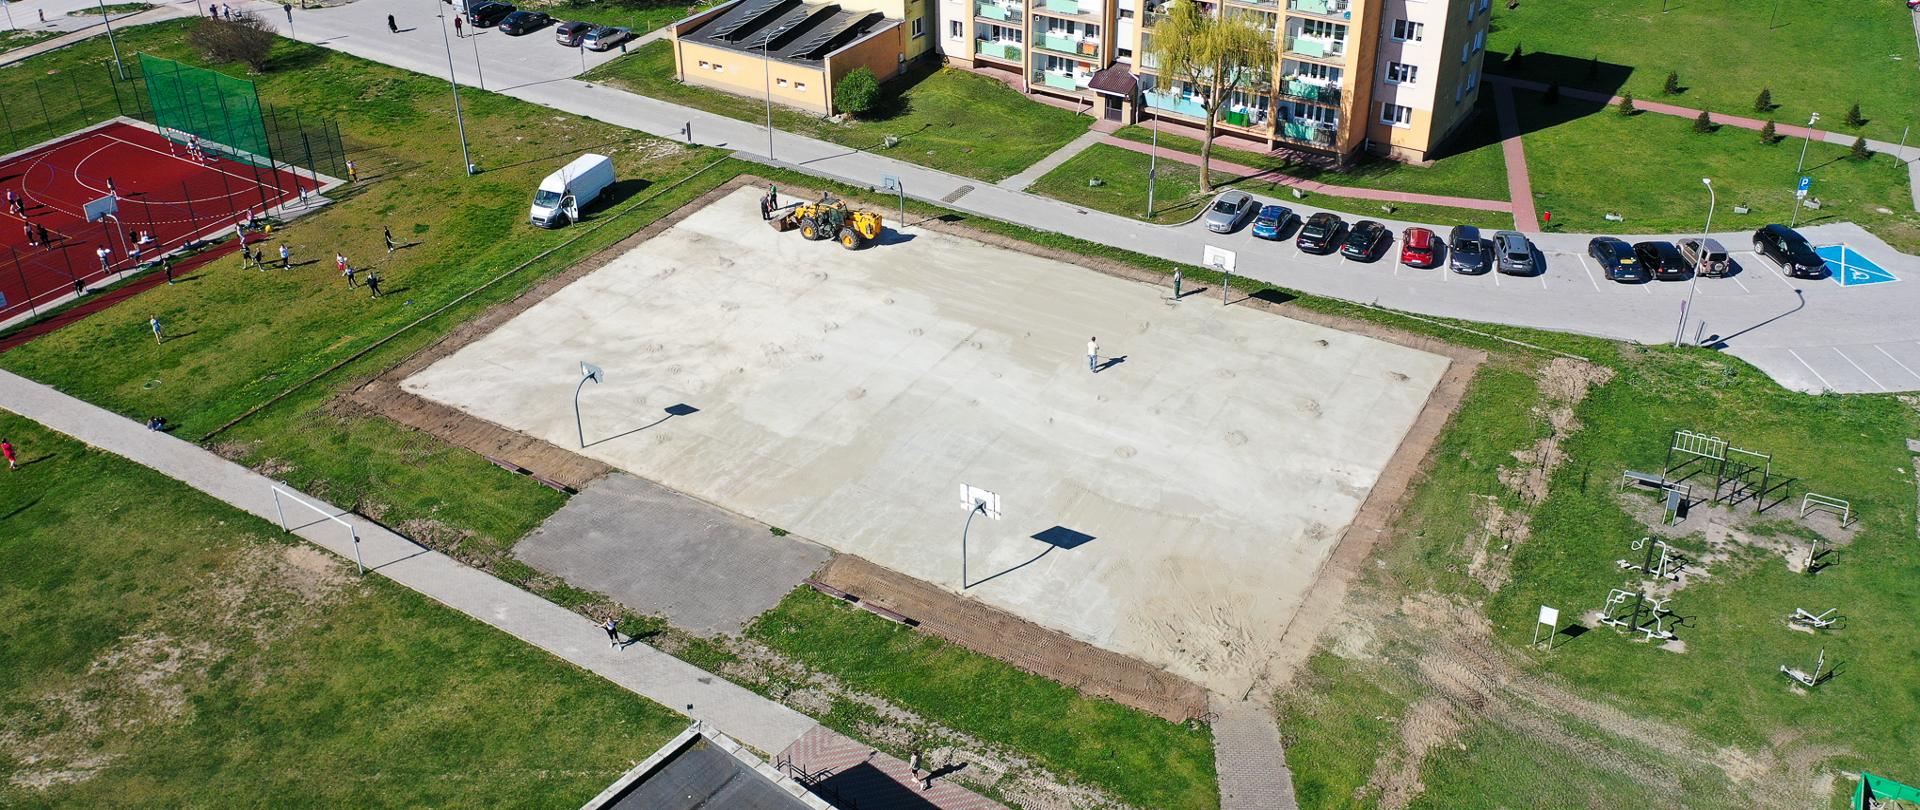 Zdjęcie przedstawia widok z drona na betonowe boisko (plac budowy)